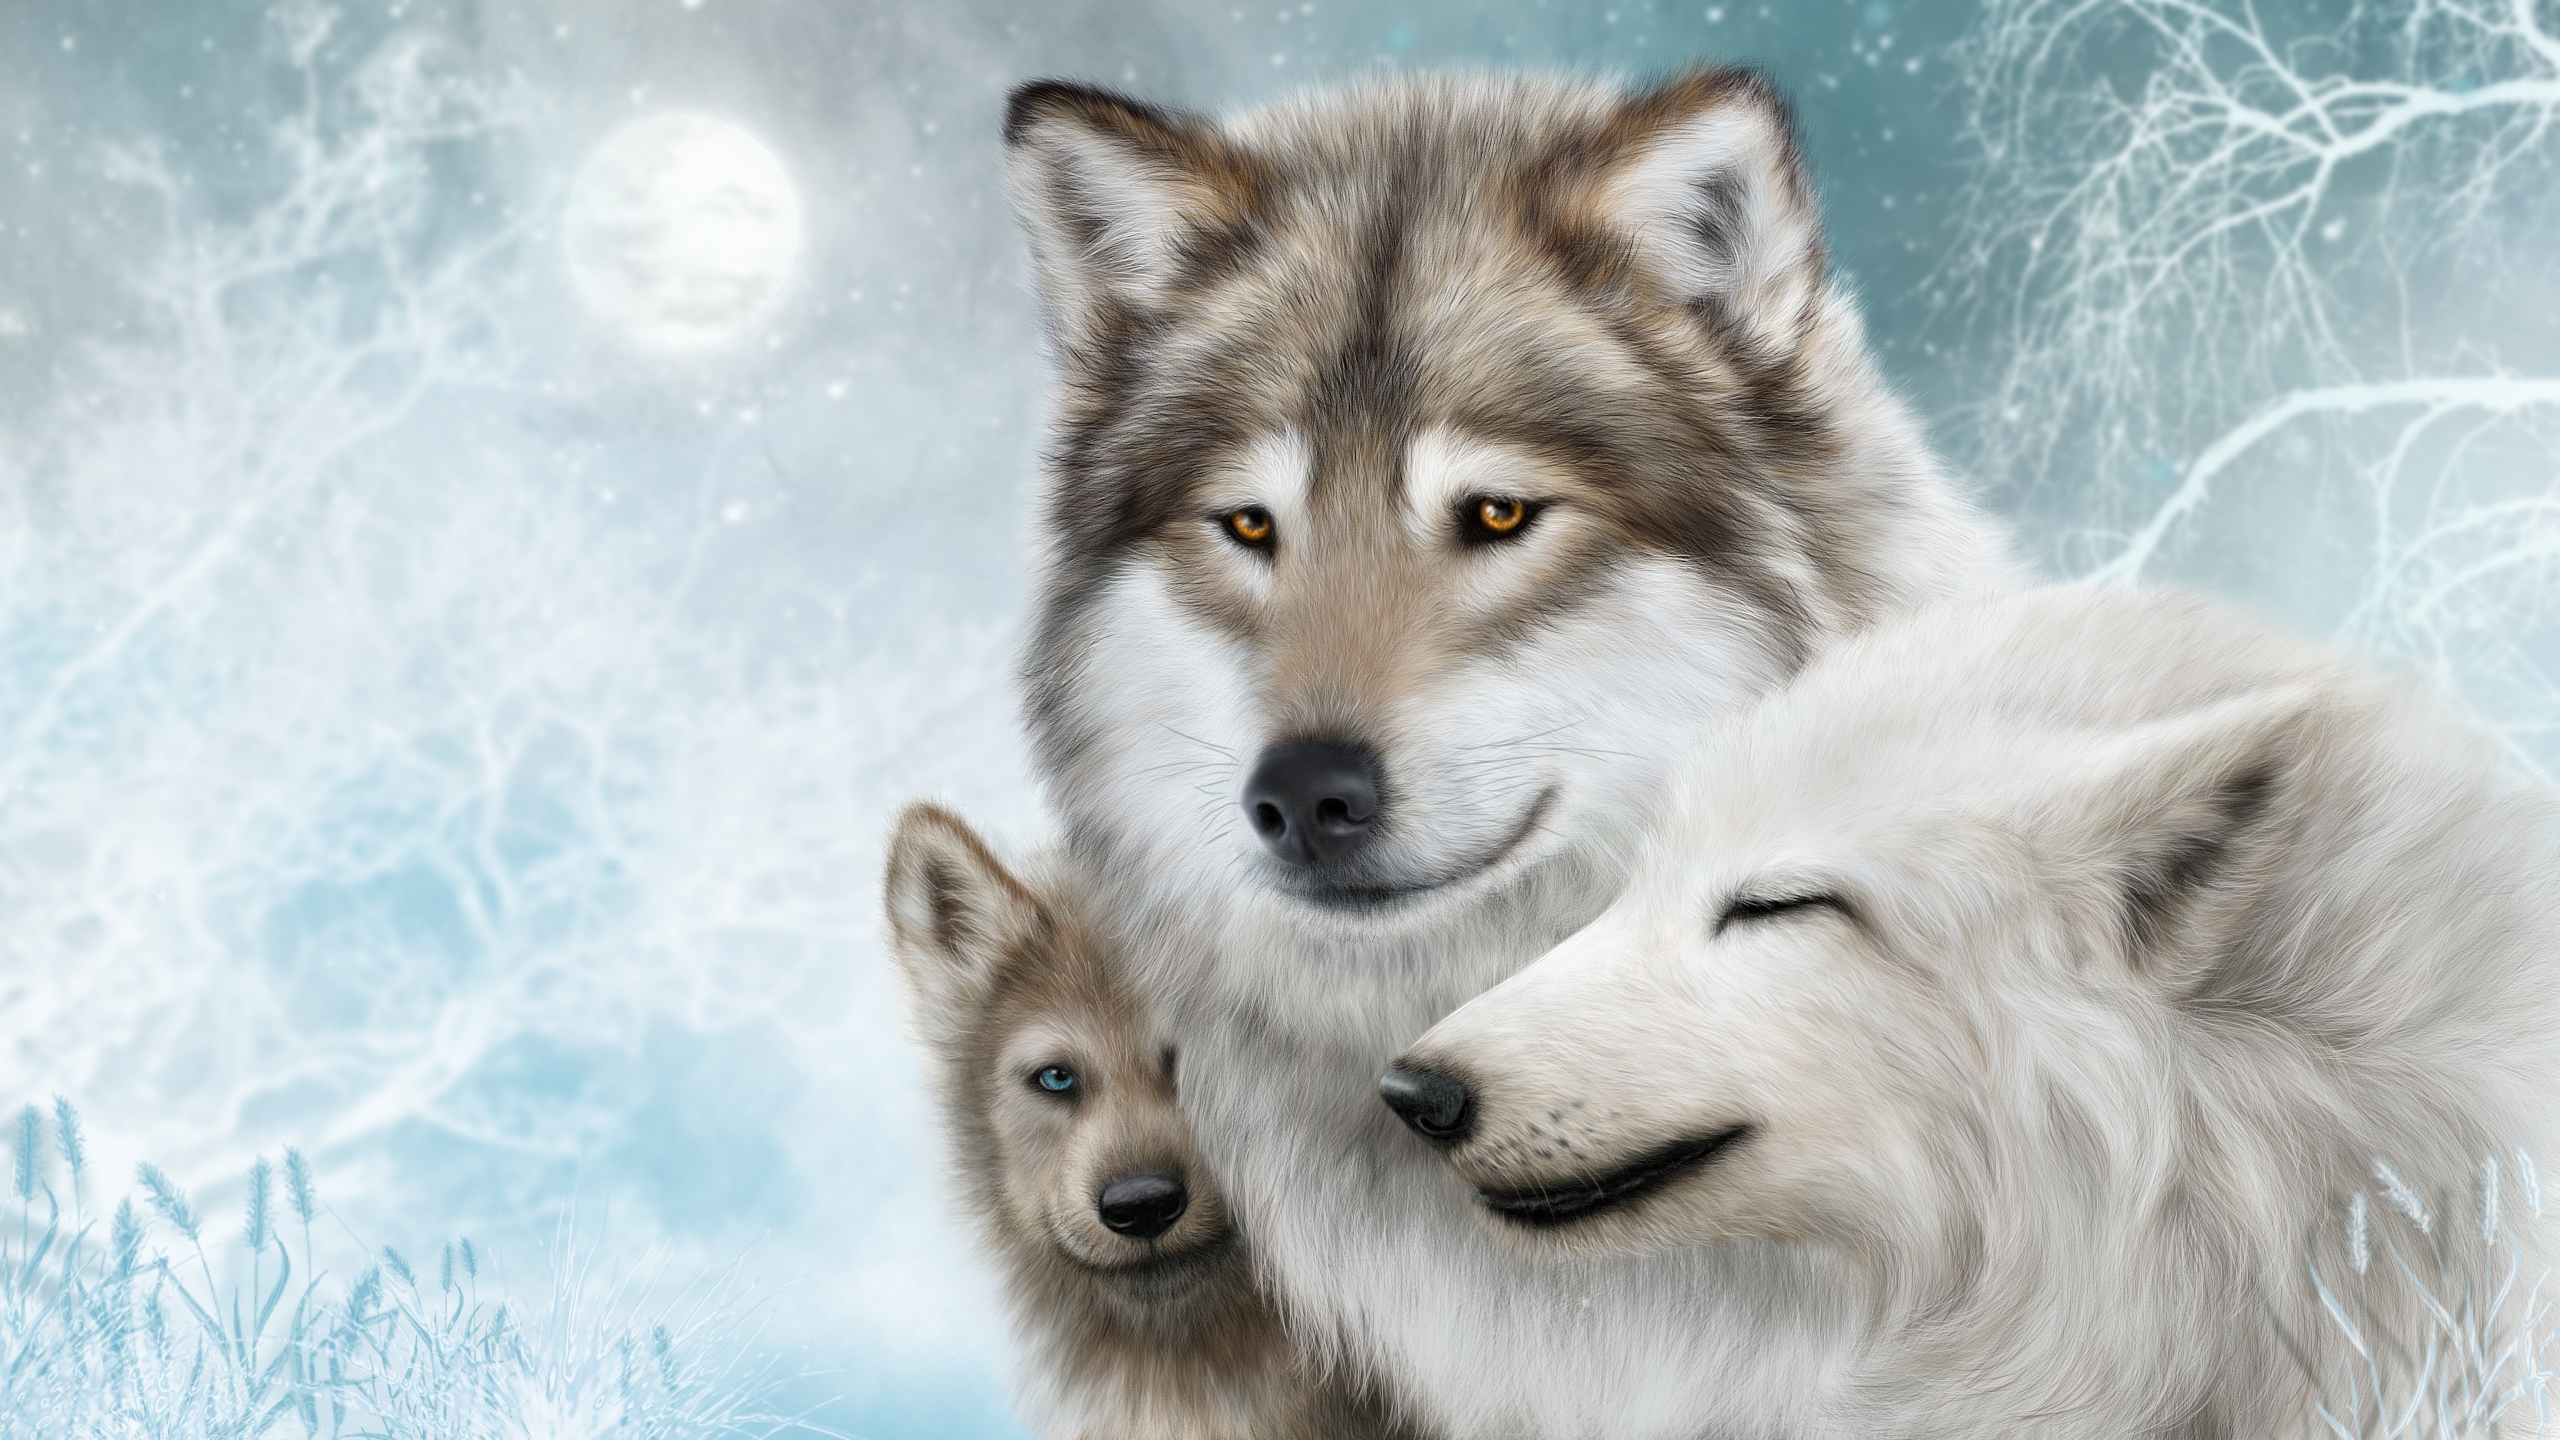 Скачать картинку Животные, Волки, Зима, Луна, Снег, Дерево, Волк, Картина в телефон бесплатно.